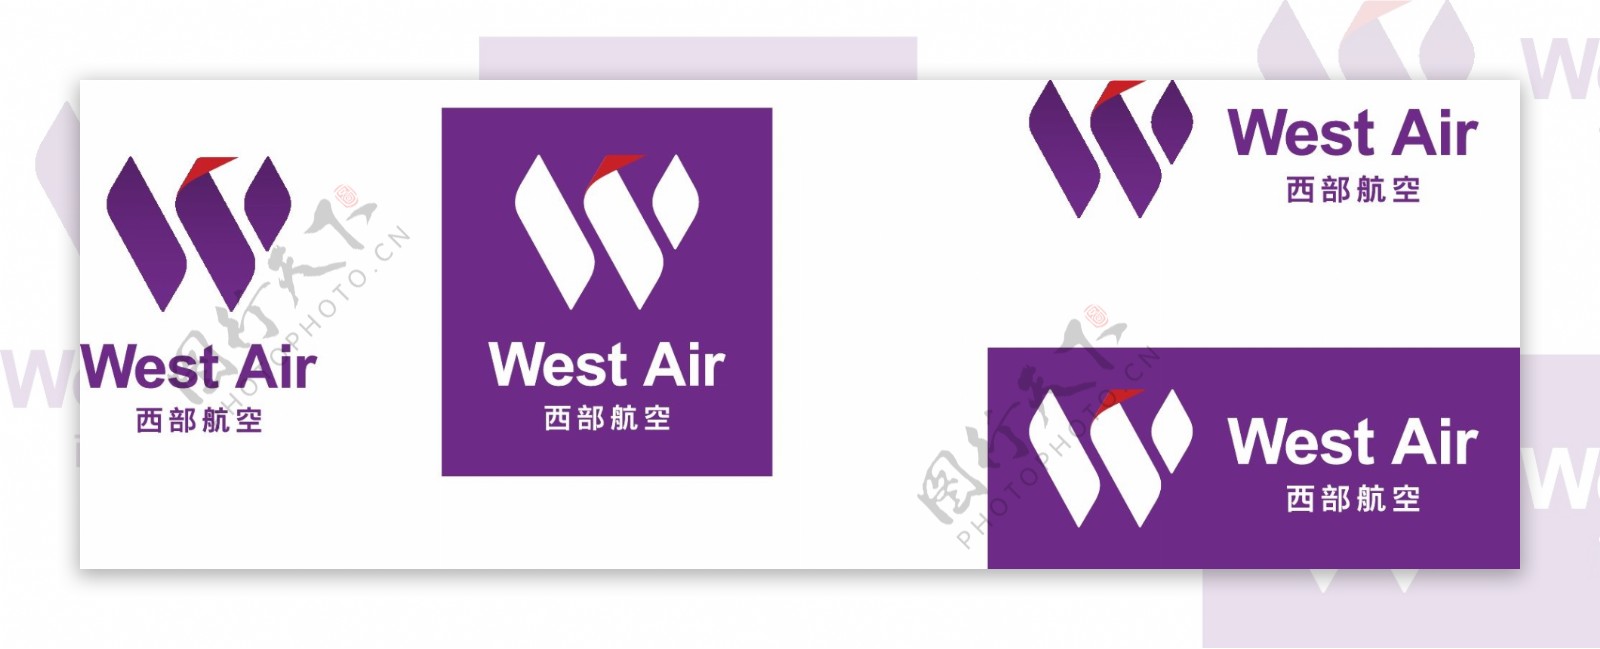 西部航空最新完整版logo